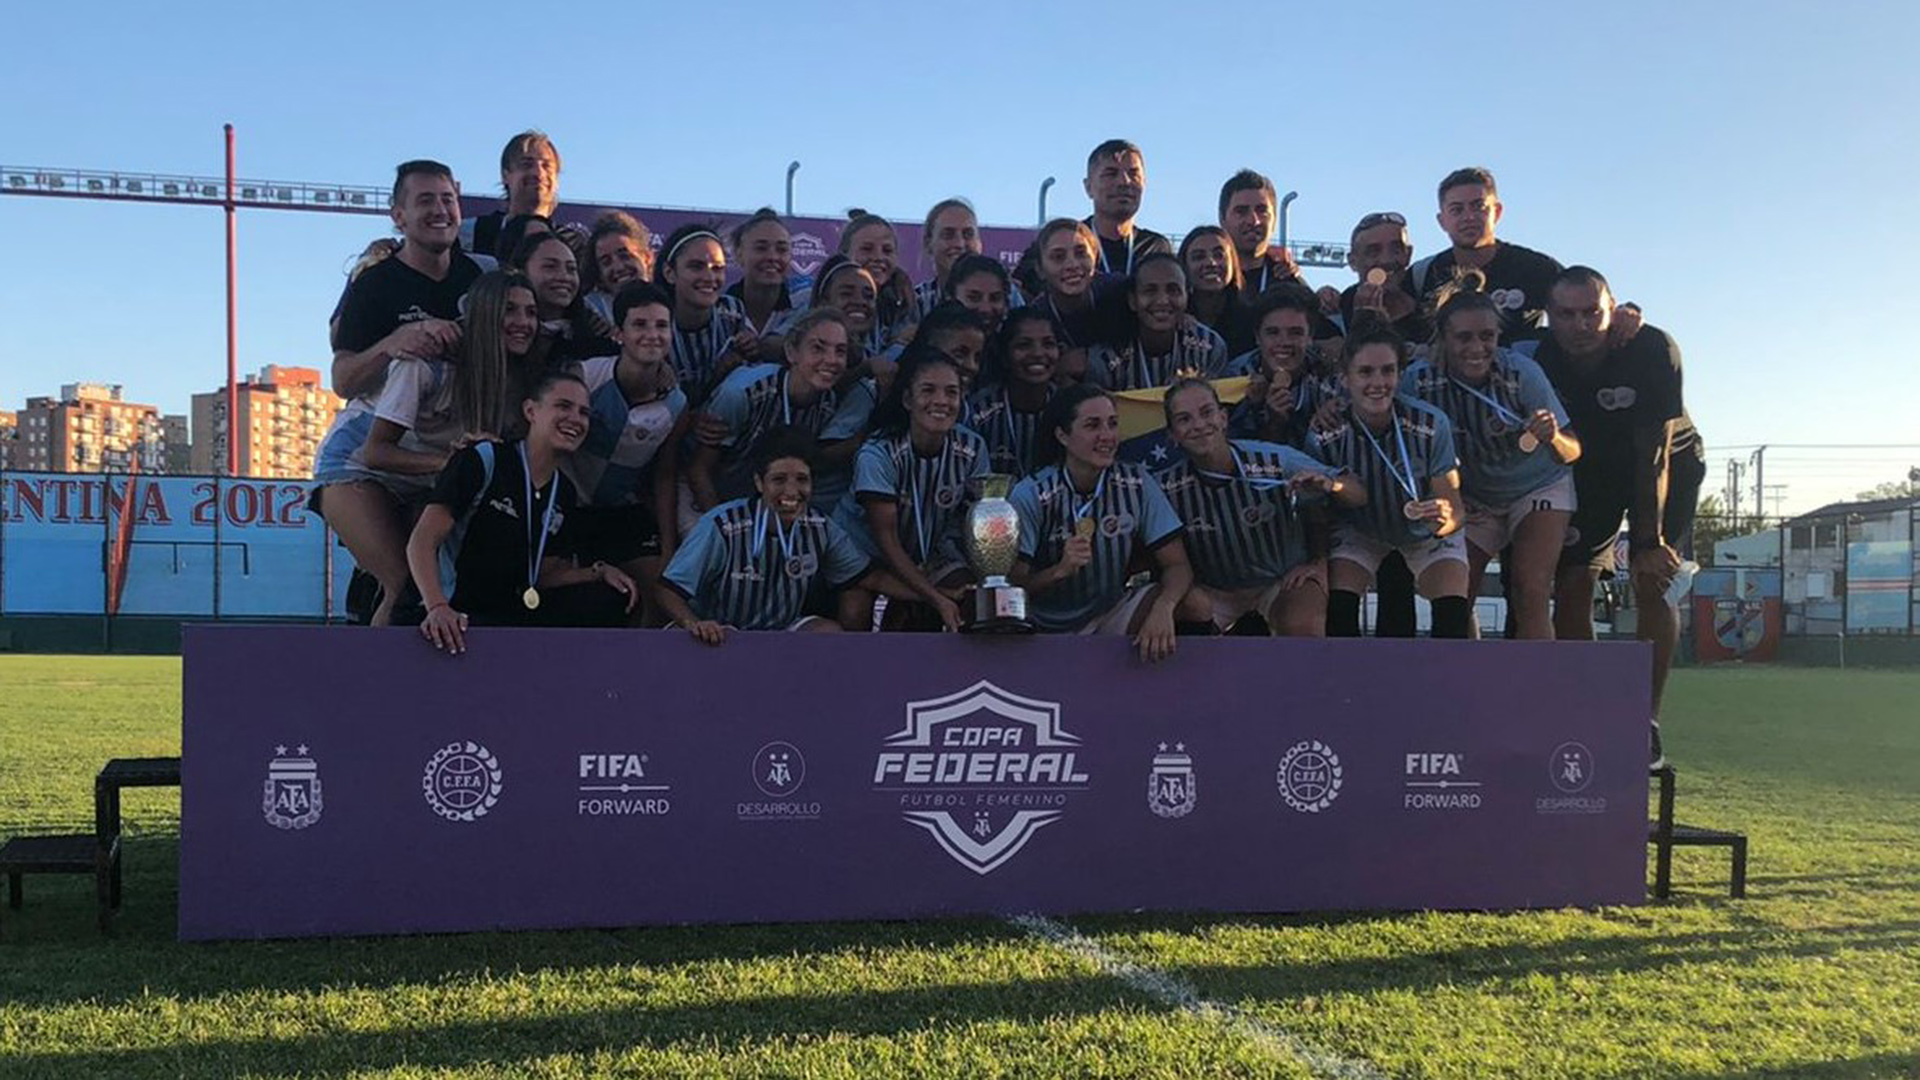 UAI Urquiza vence a Boca y se ubica primera en la Primera División  Argentina - Fémina Fútbol